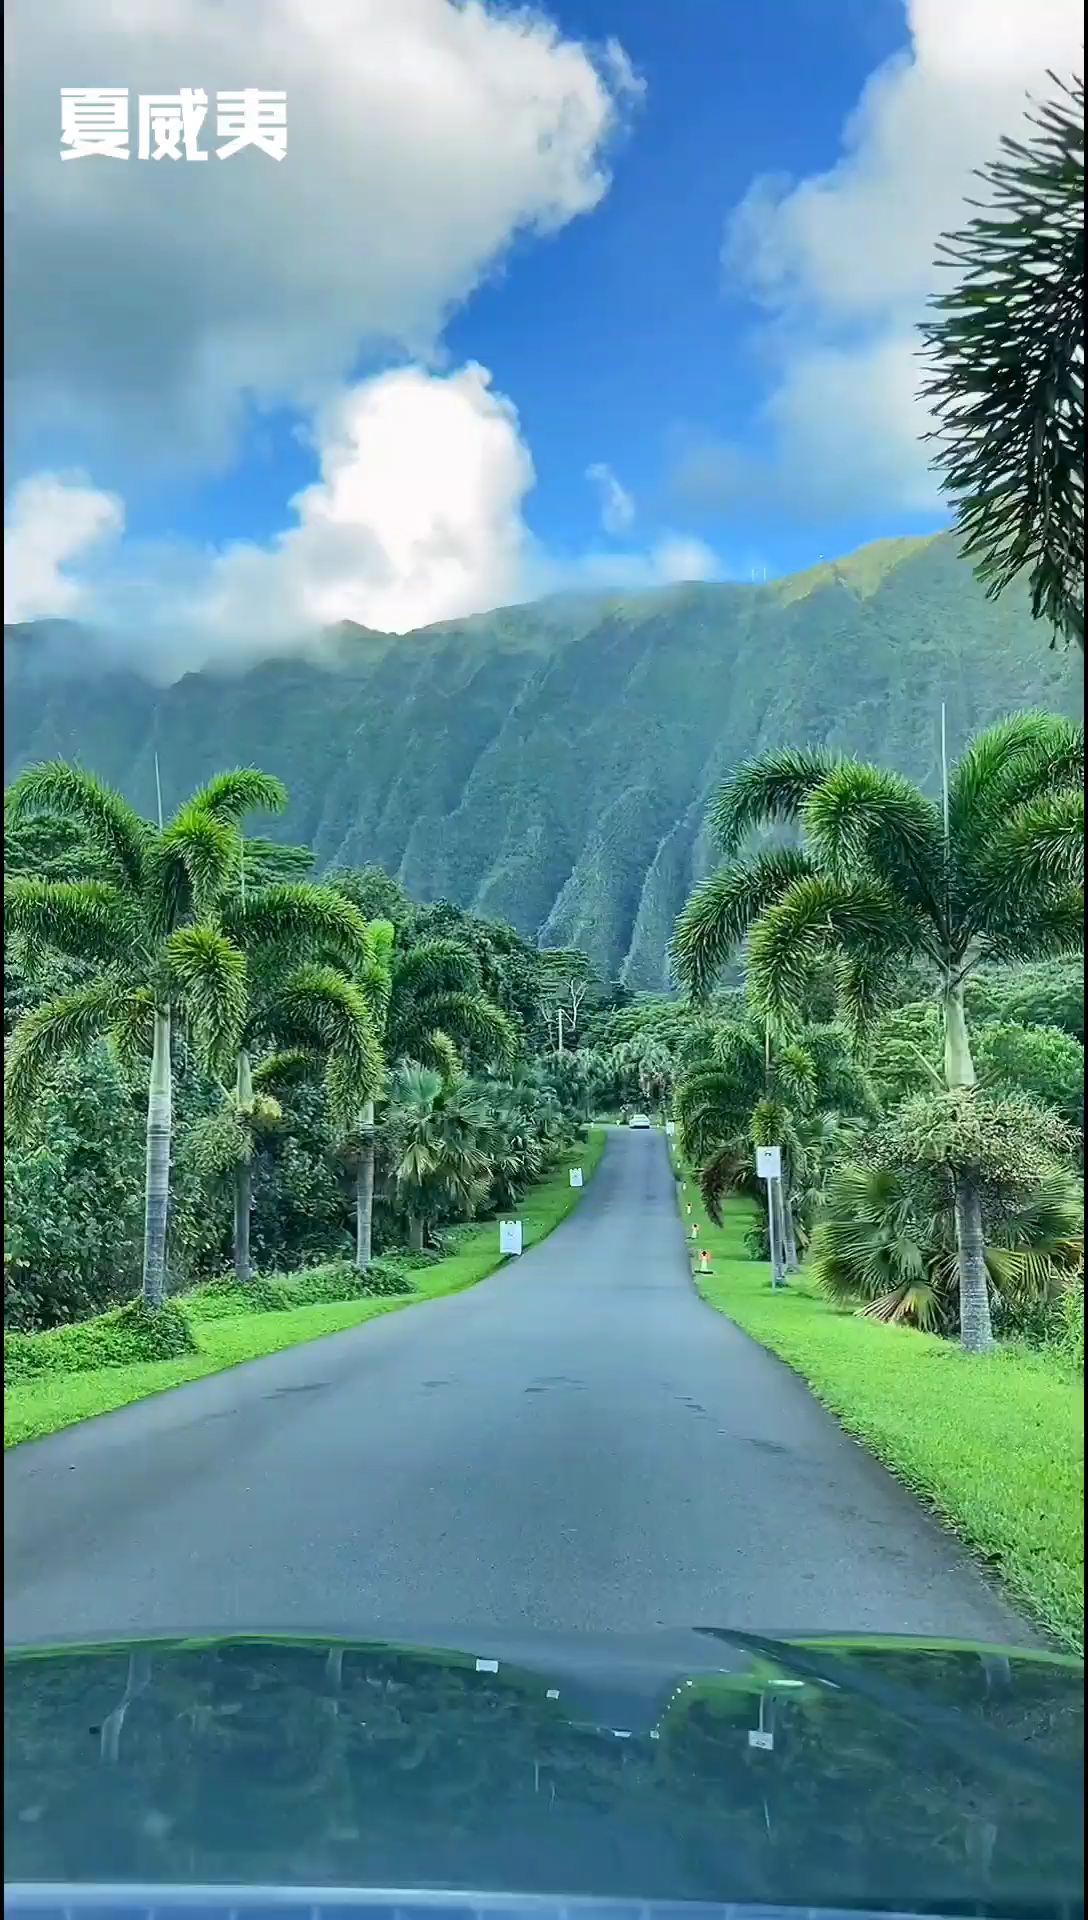 如果真的有天堂，一定就是夏威夷❤️#旅行 #最美公路 #夏威夷 #